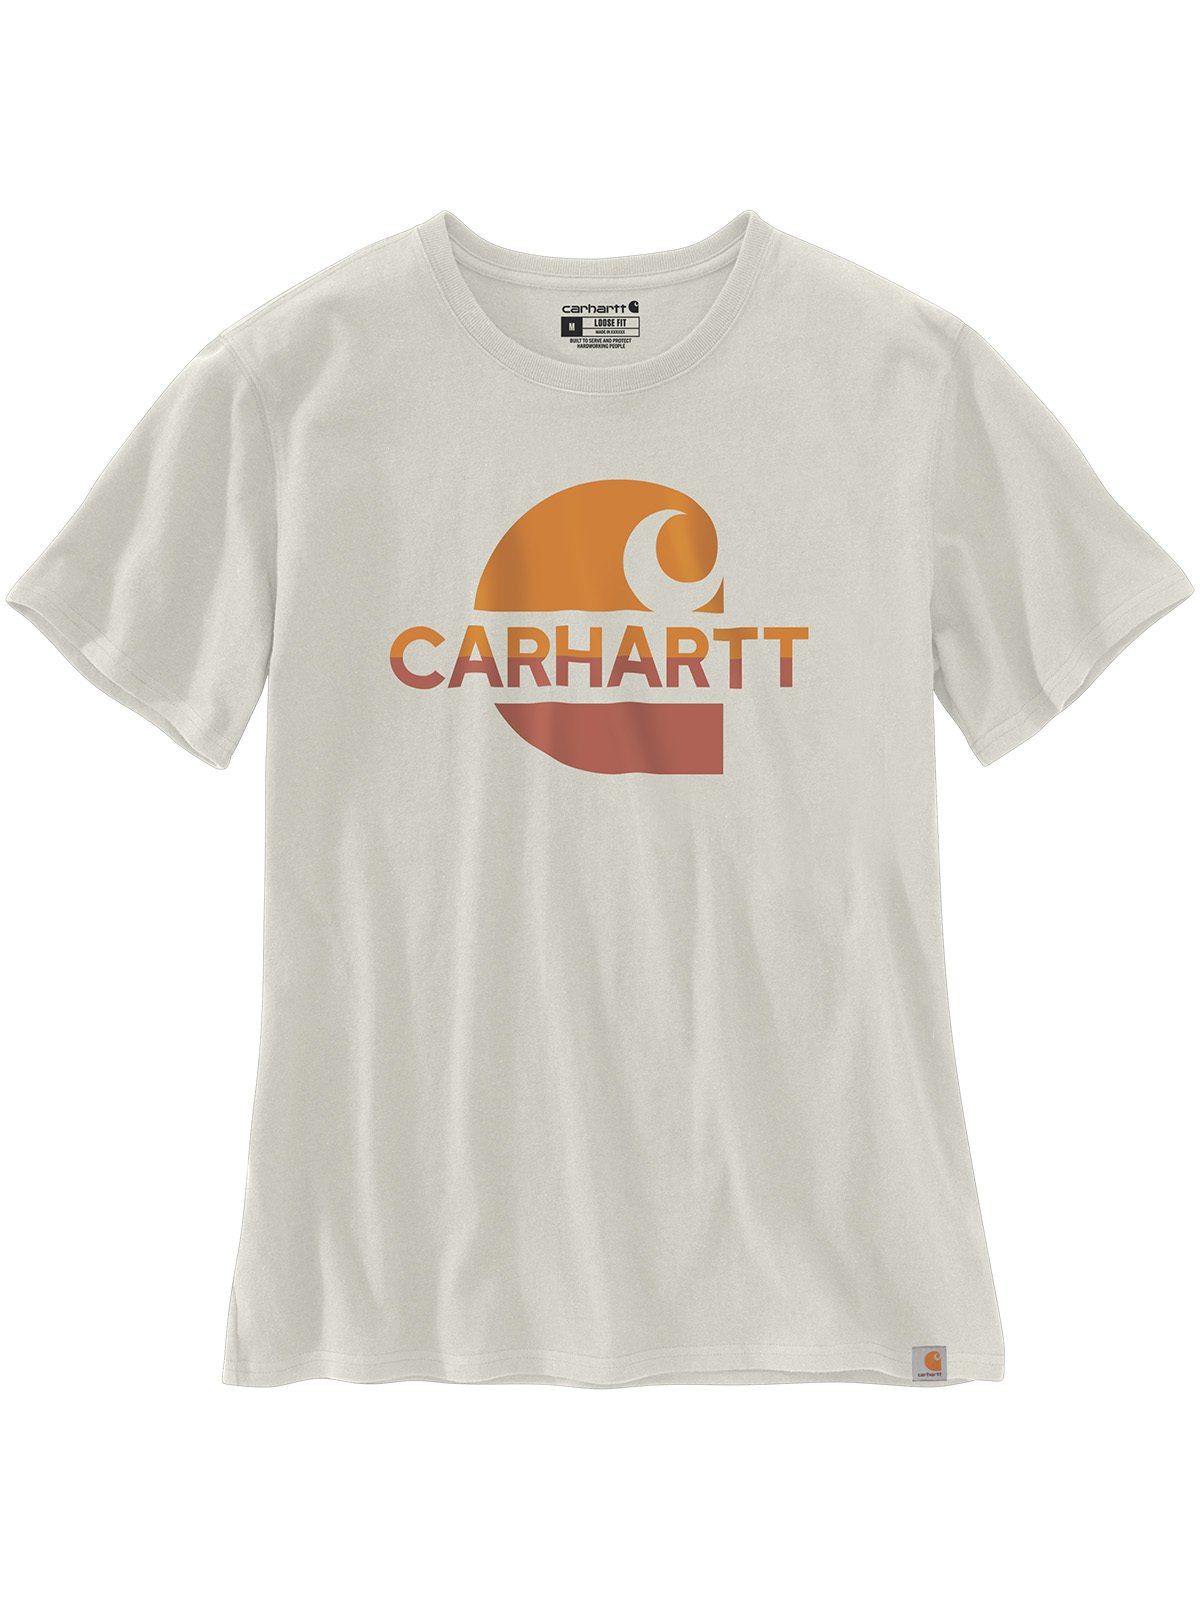 Carhartt Graphic T-Shirt weiß T-Shirt Carhartt malt